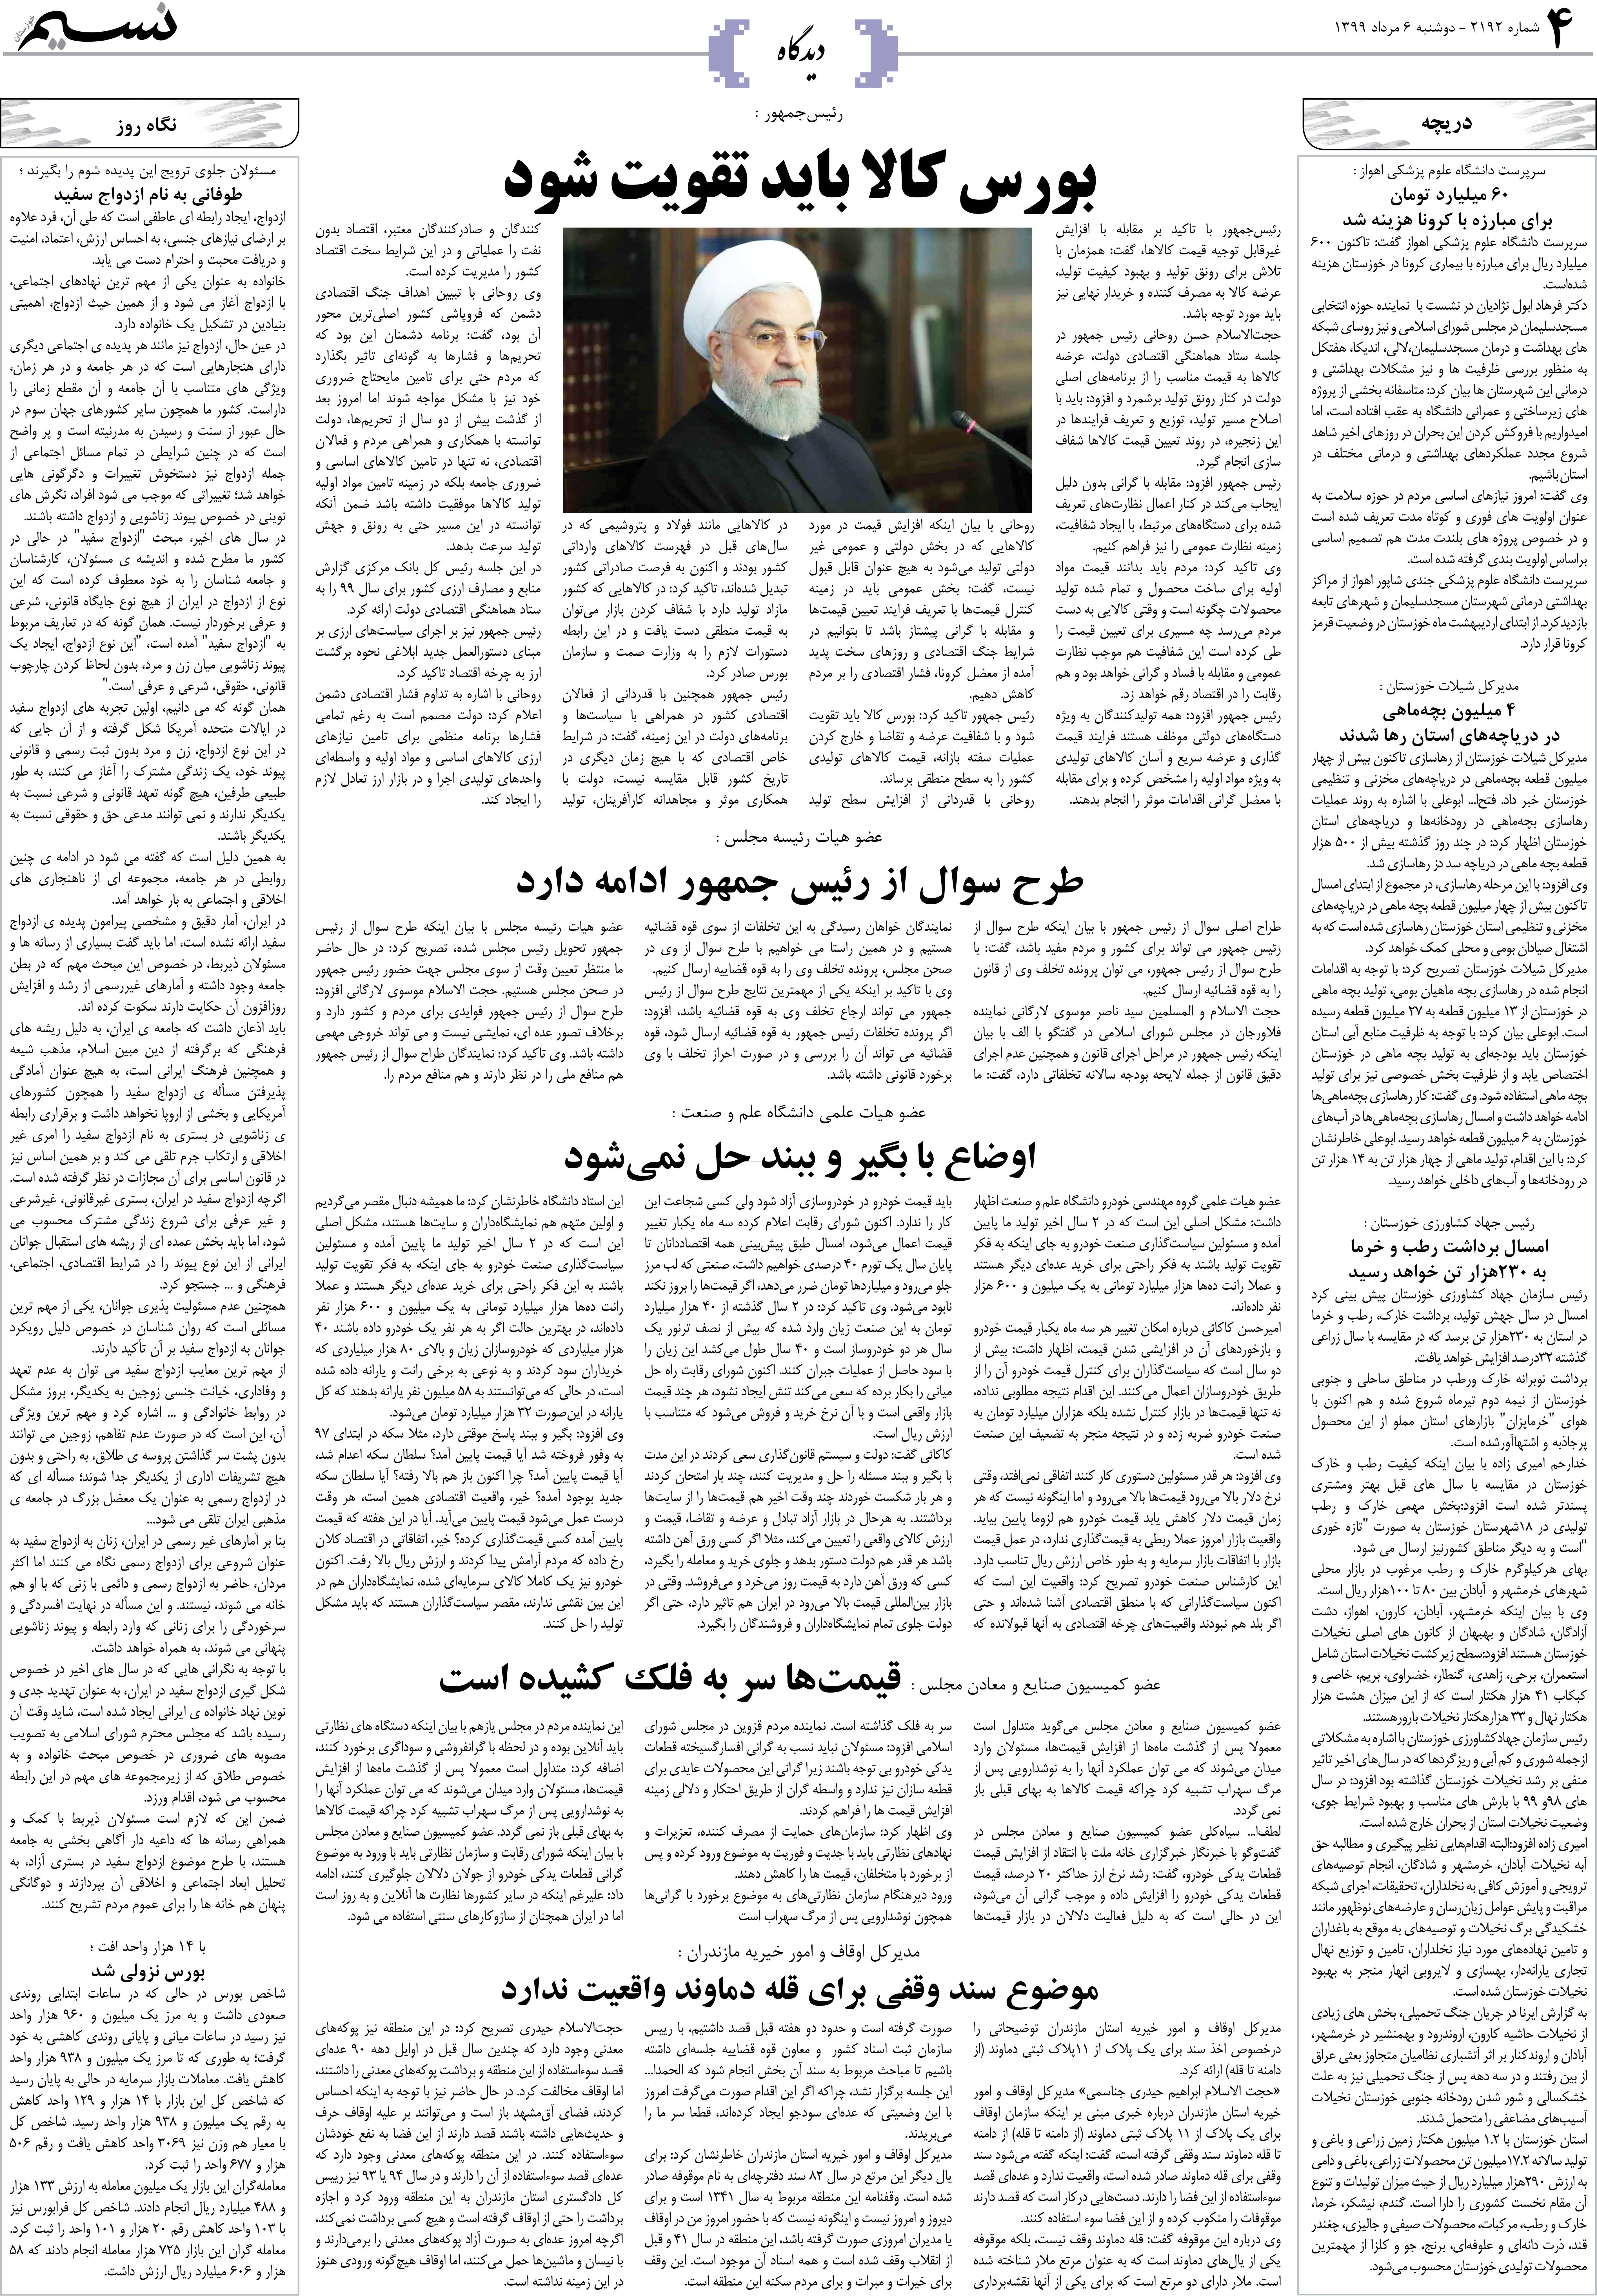 صفحه دیدگاه روزنامه نسیم شماره 2192